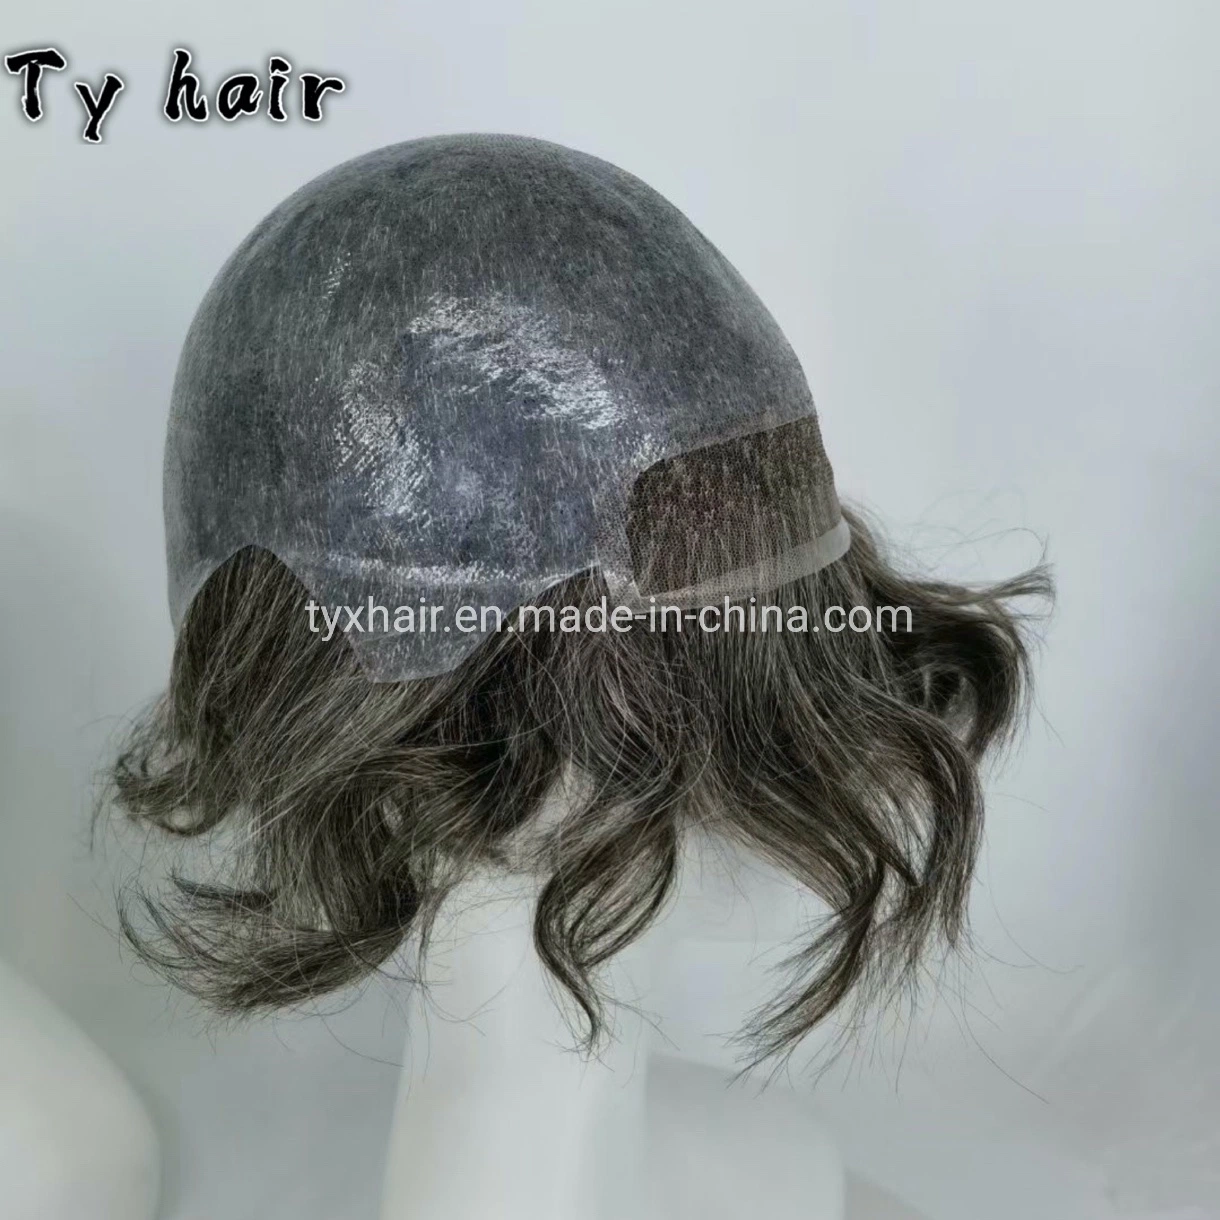 Frente com atacadores Suíça, com aspeto natural, PU Poly, parte de trás Produtos Hair Homem de produtos personalizados com tampa completa sistemas Hair humano Wig